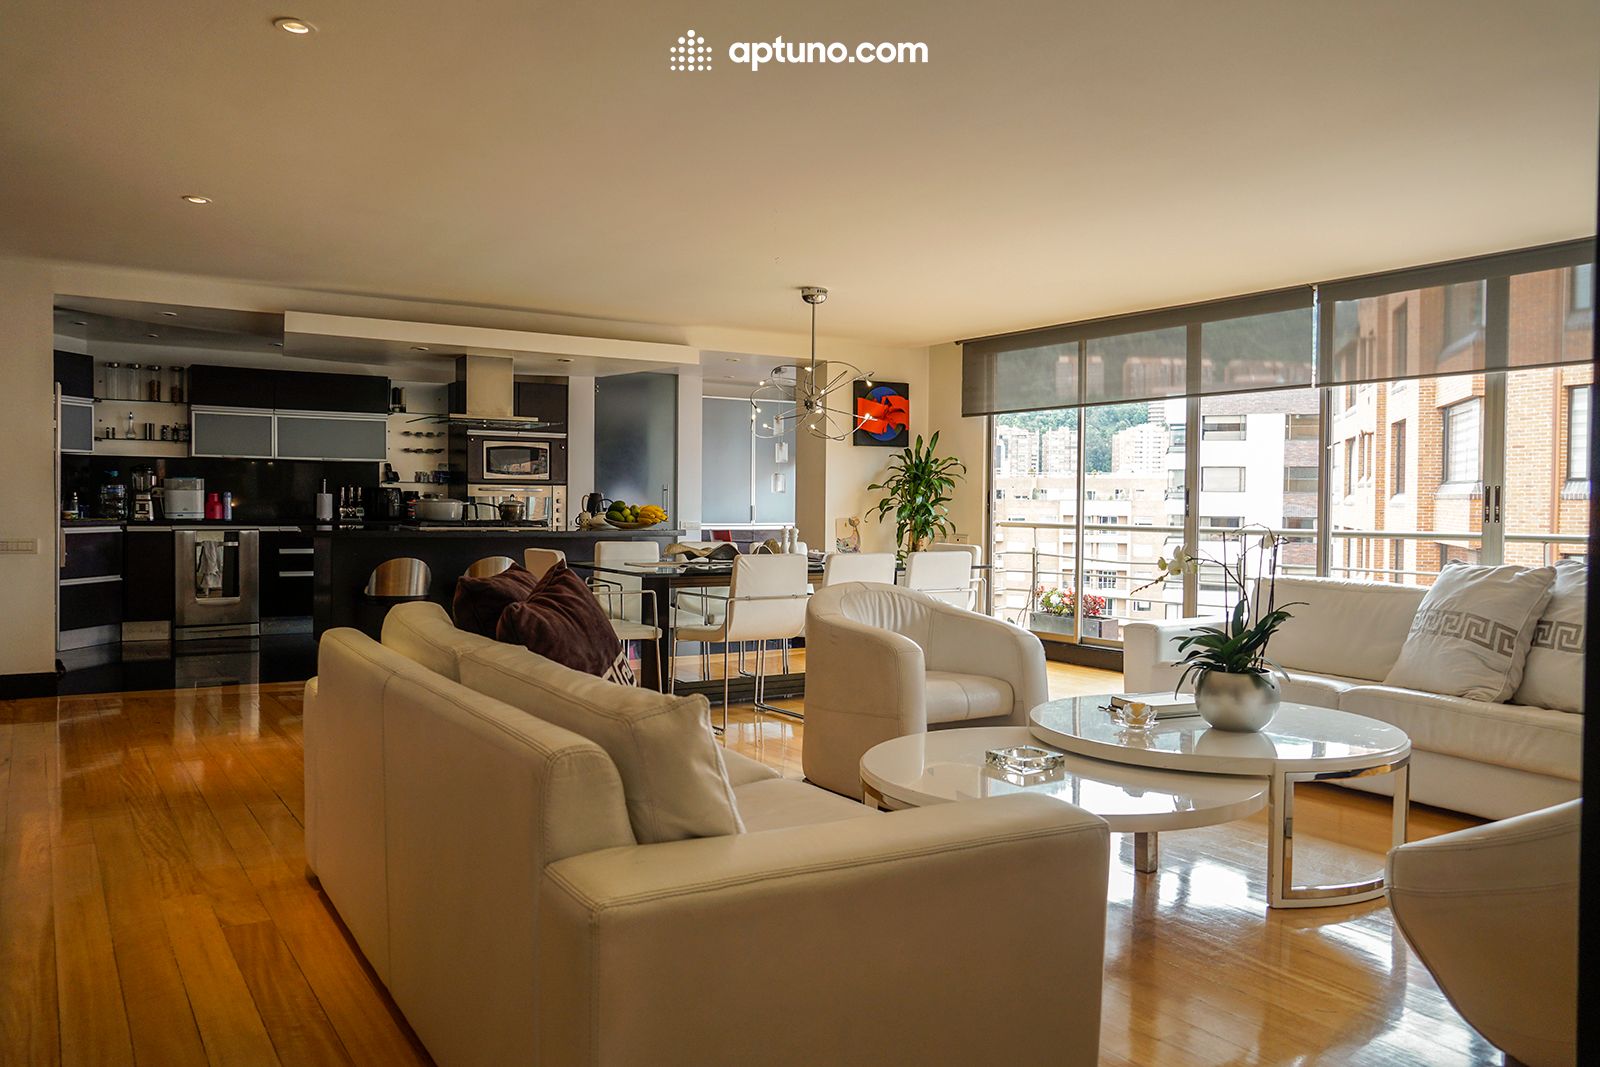 Apartamento en arriendo Santa Bárbara Central 300 m² - $ 18.000.000